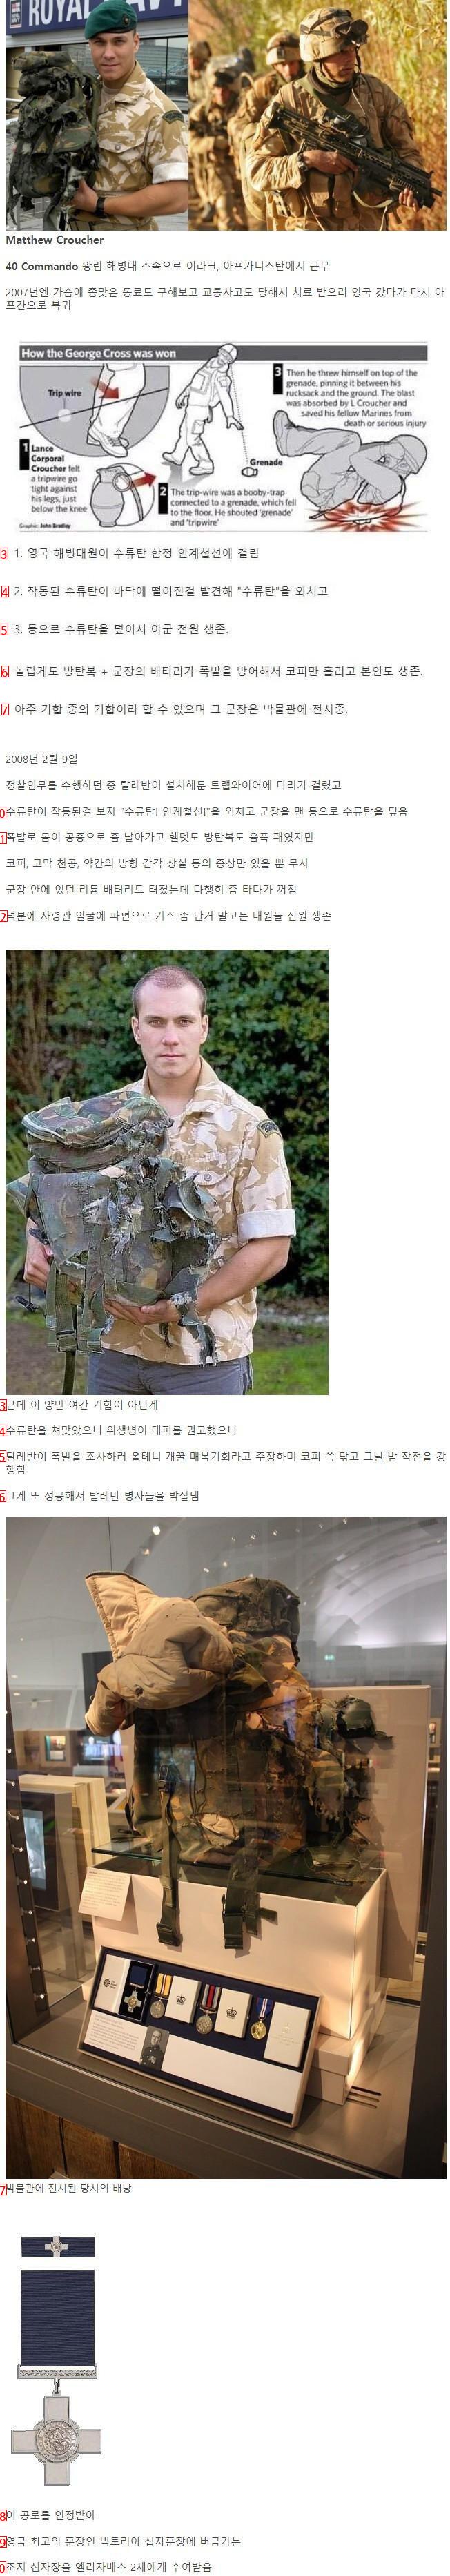 정통으로 수류탄 맞고 생존한 군인.jpg